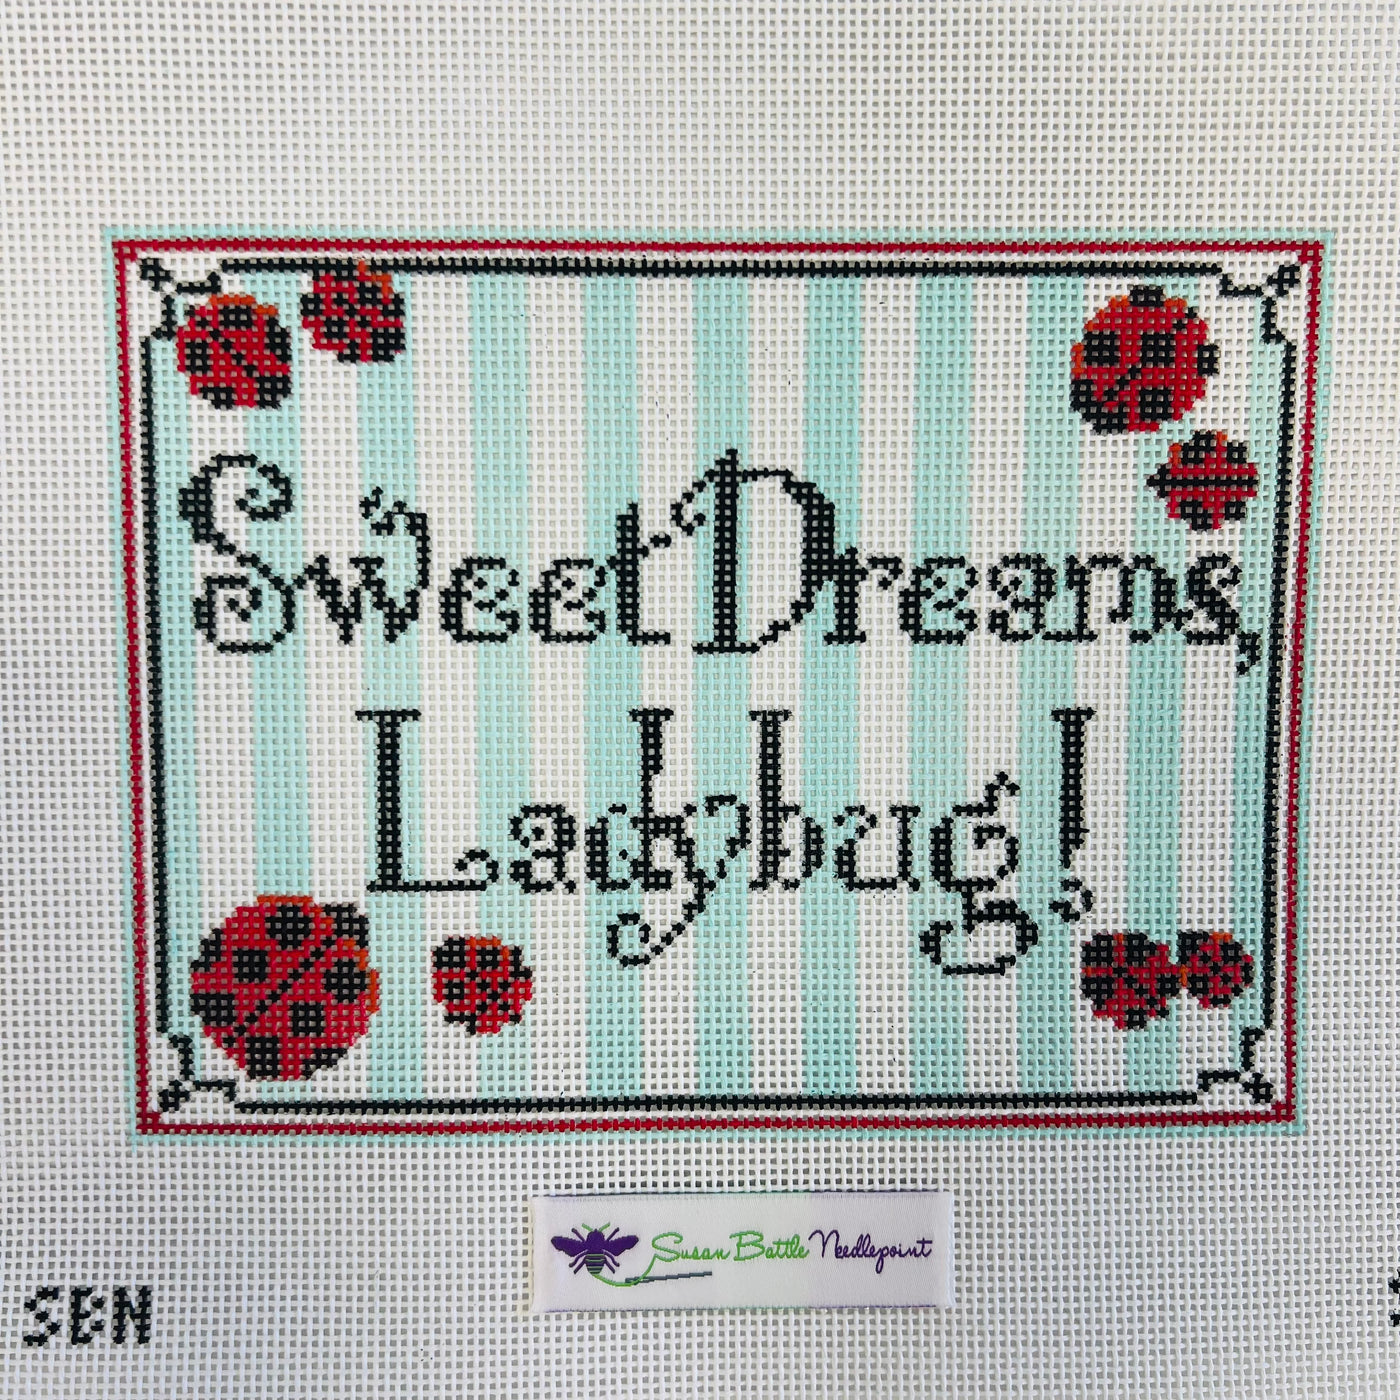 Sweet Dreams Ladybug